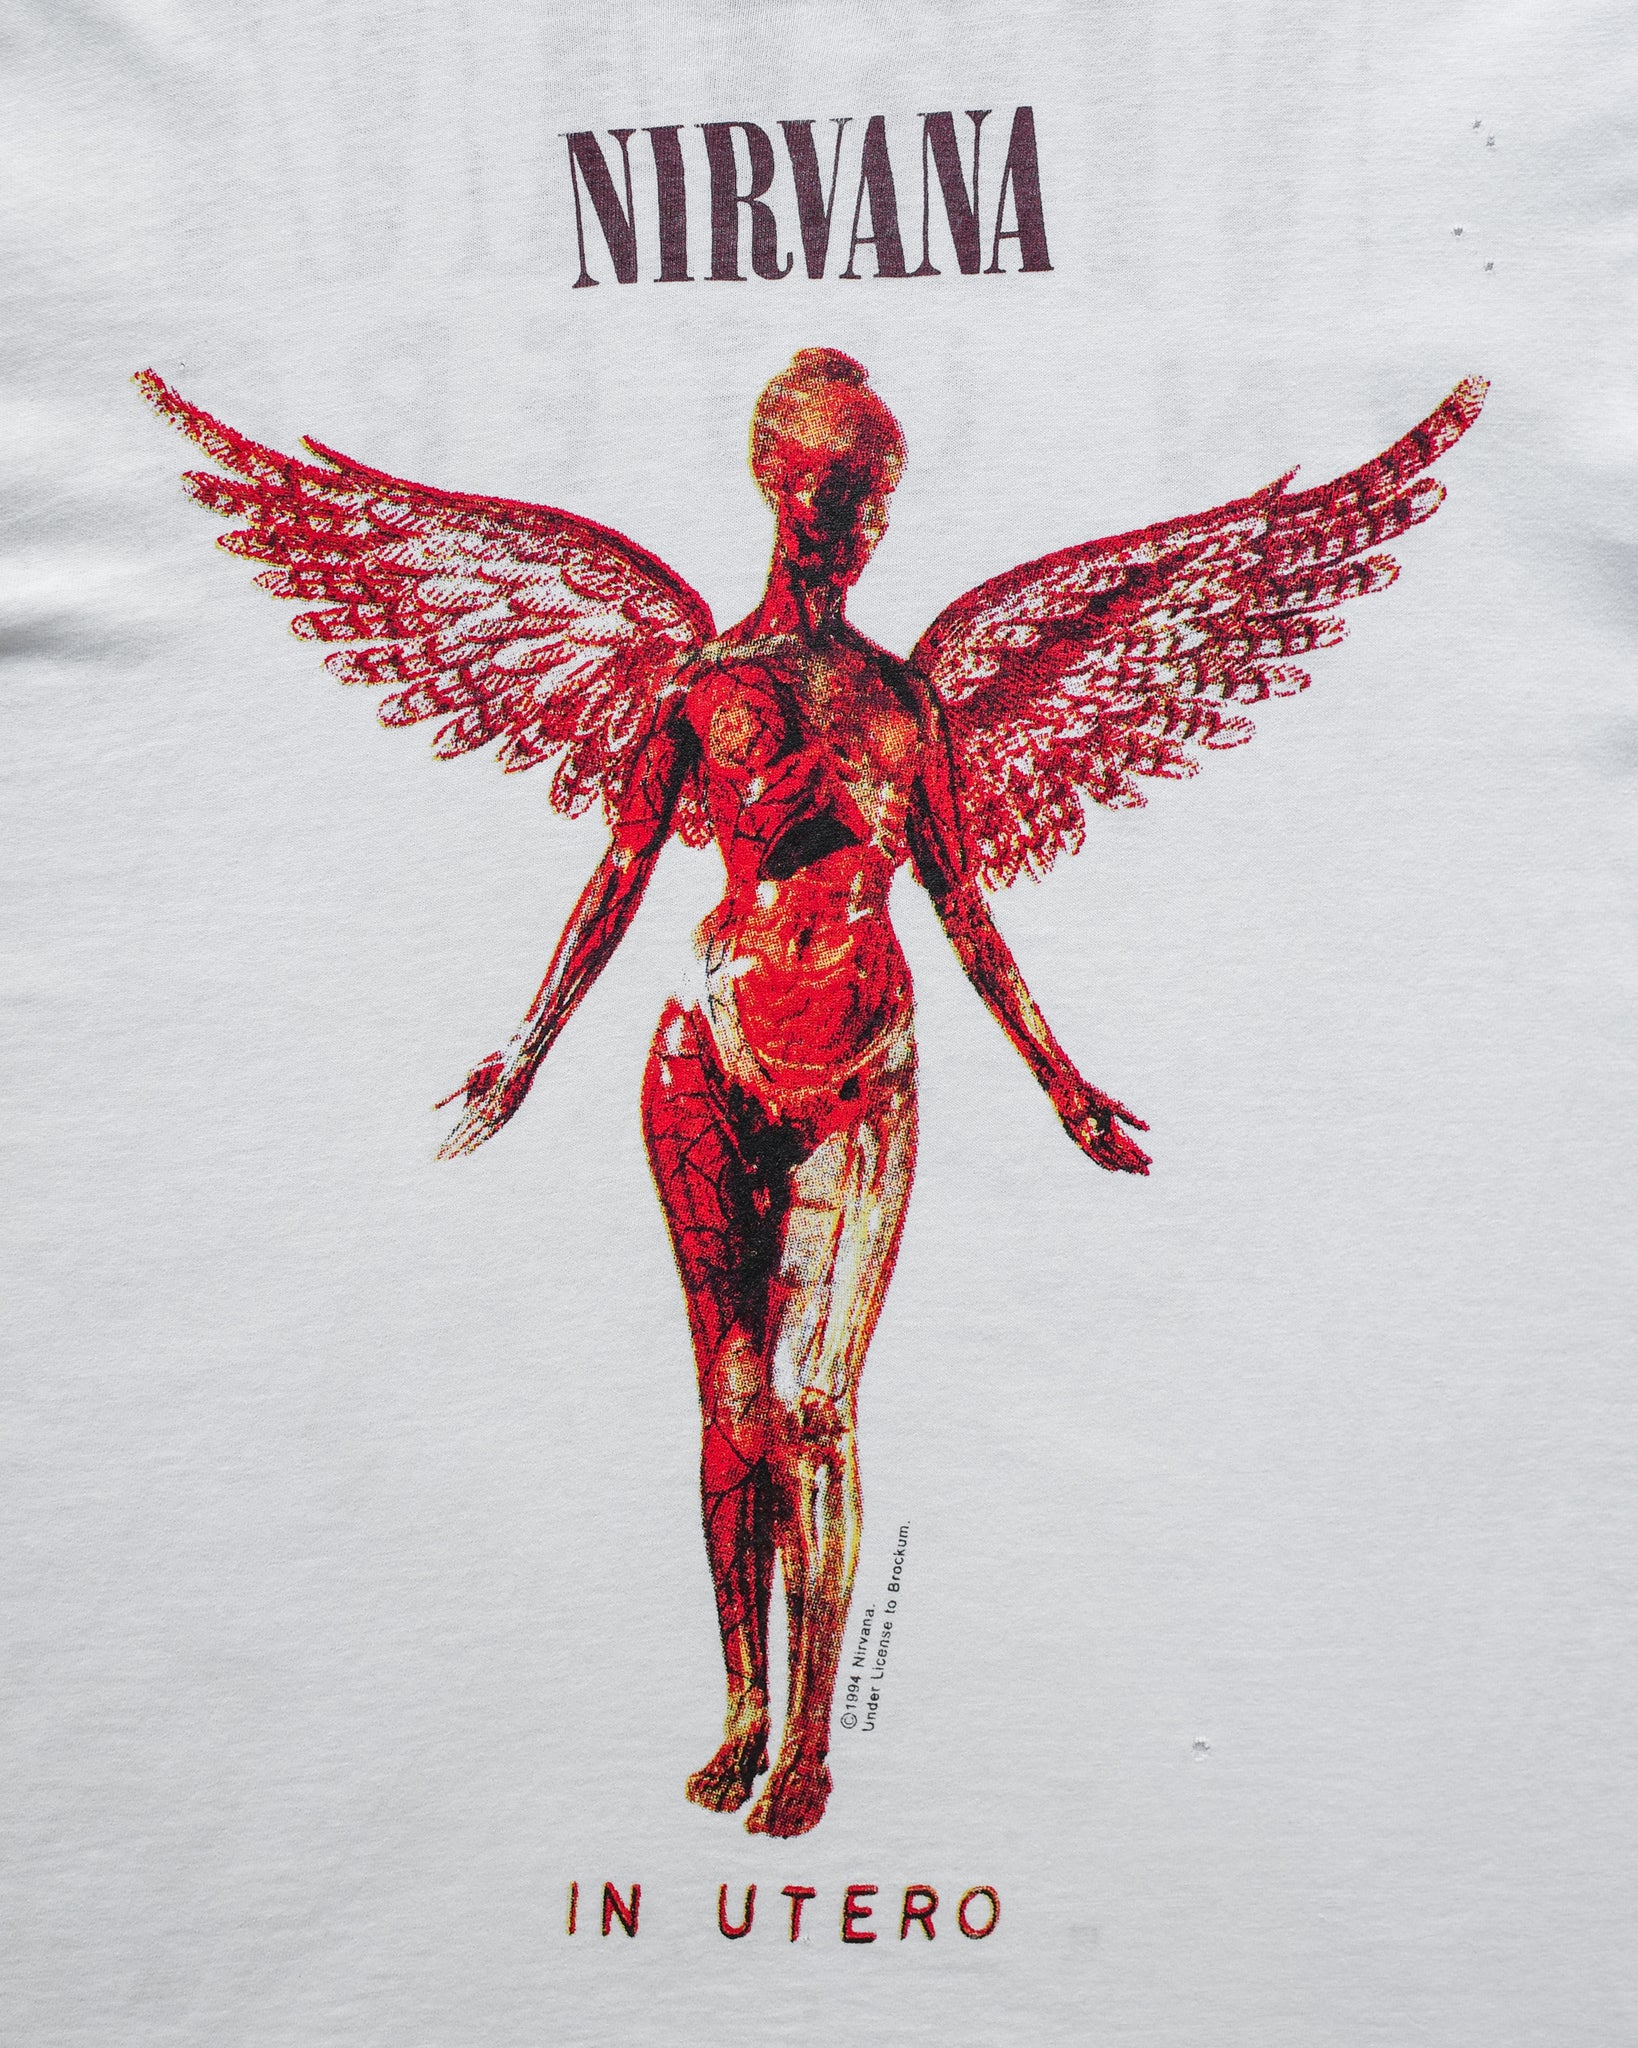 1994 Nirvanna "In Uerto" Europe Tour Tee